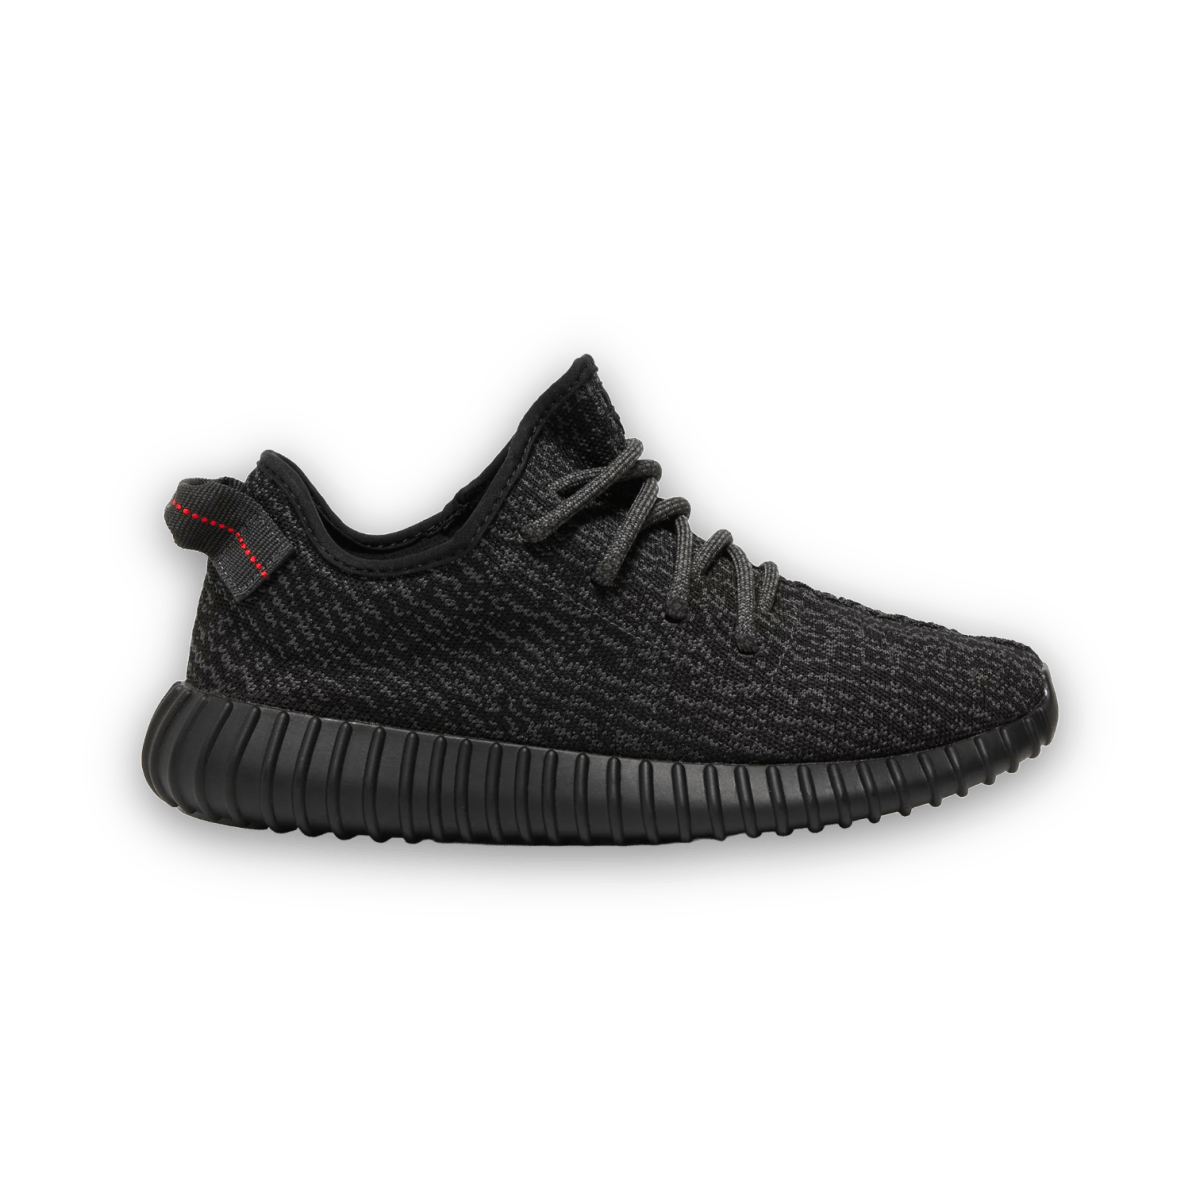 Yeezy Boost 350 'Pirate Black' 2022 - Low Sneaker - Jawns on Fire Sneakers & Streetwear